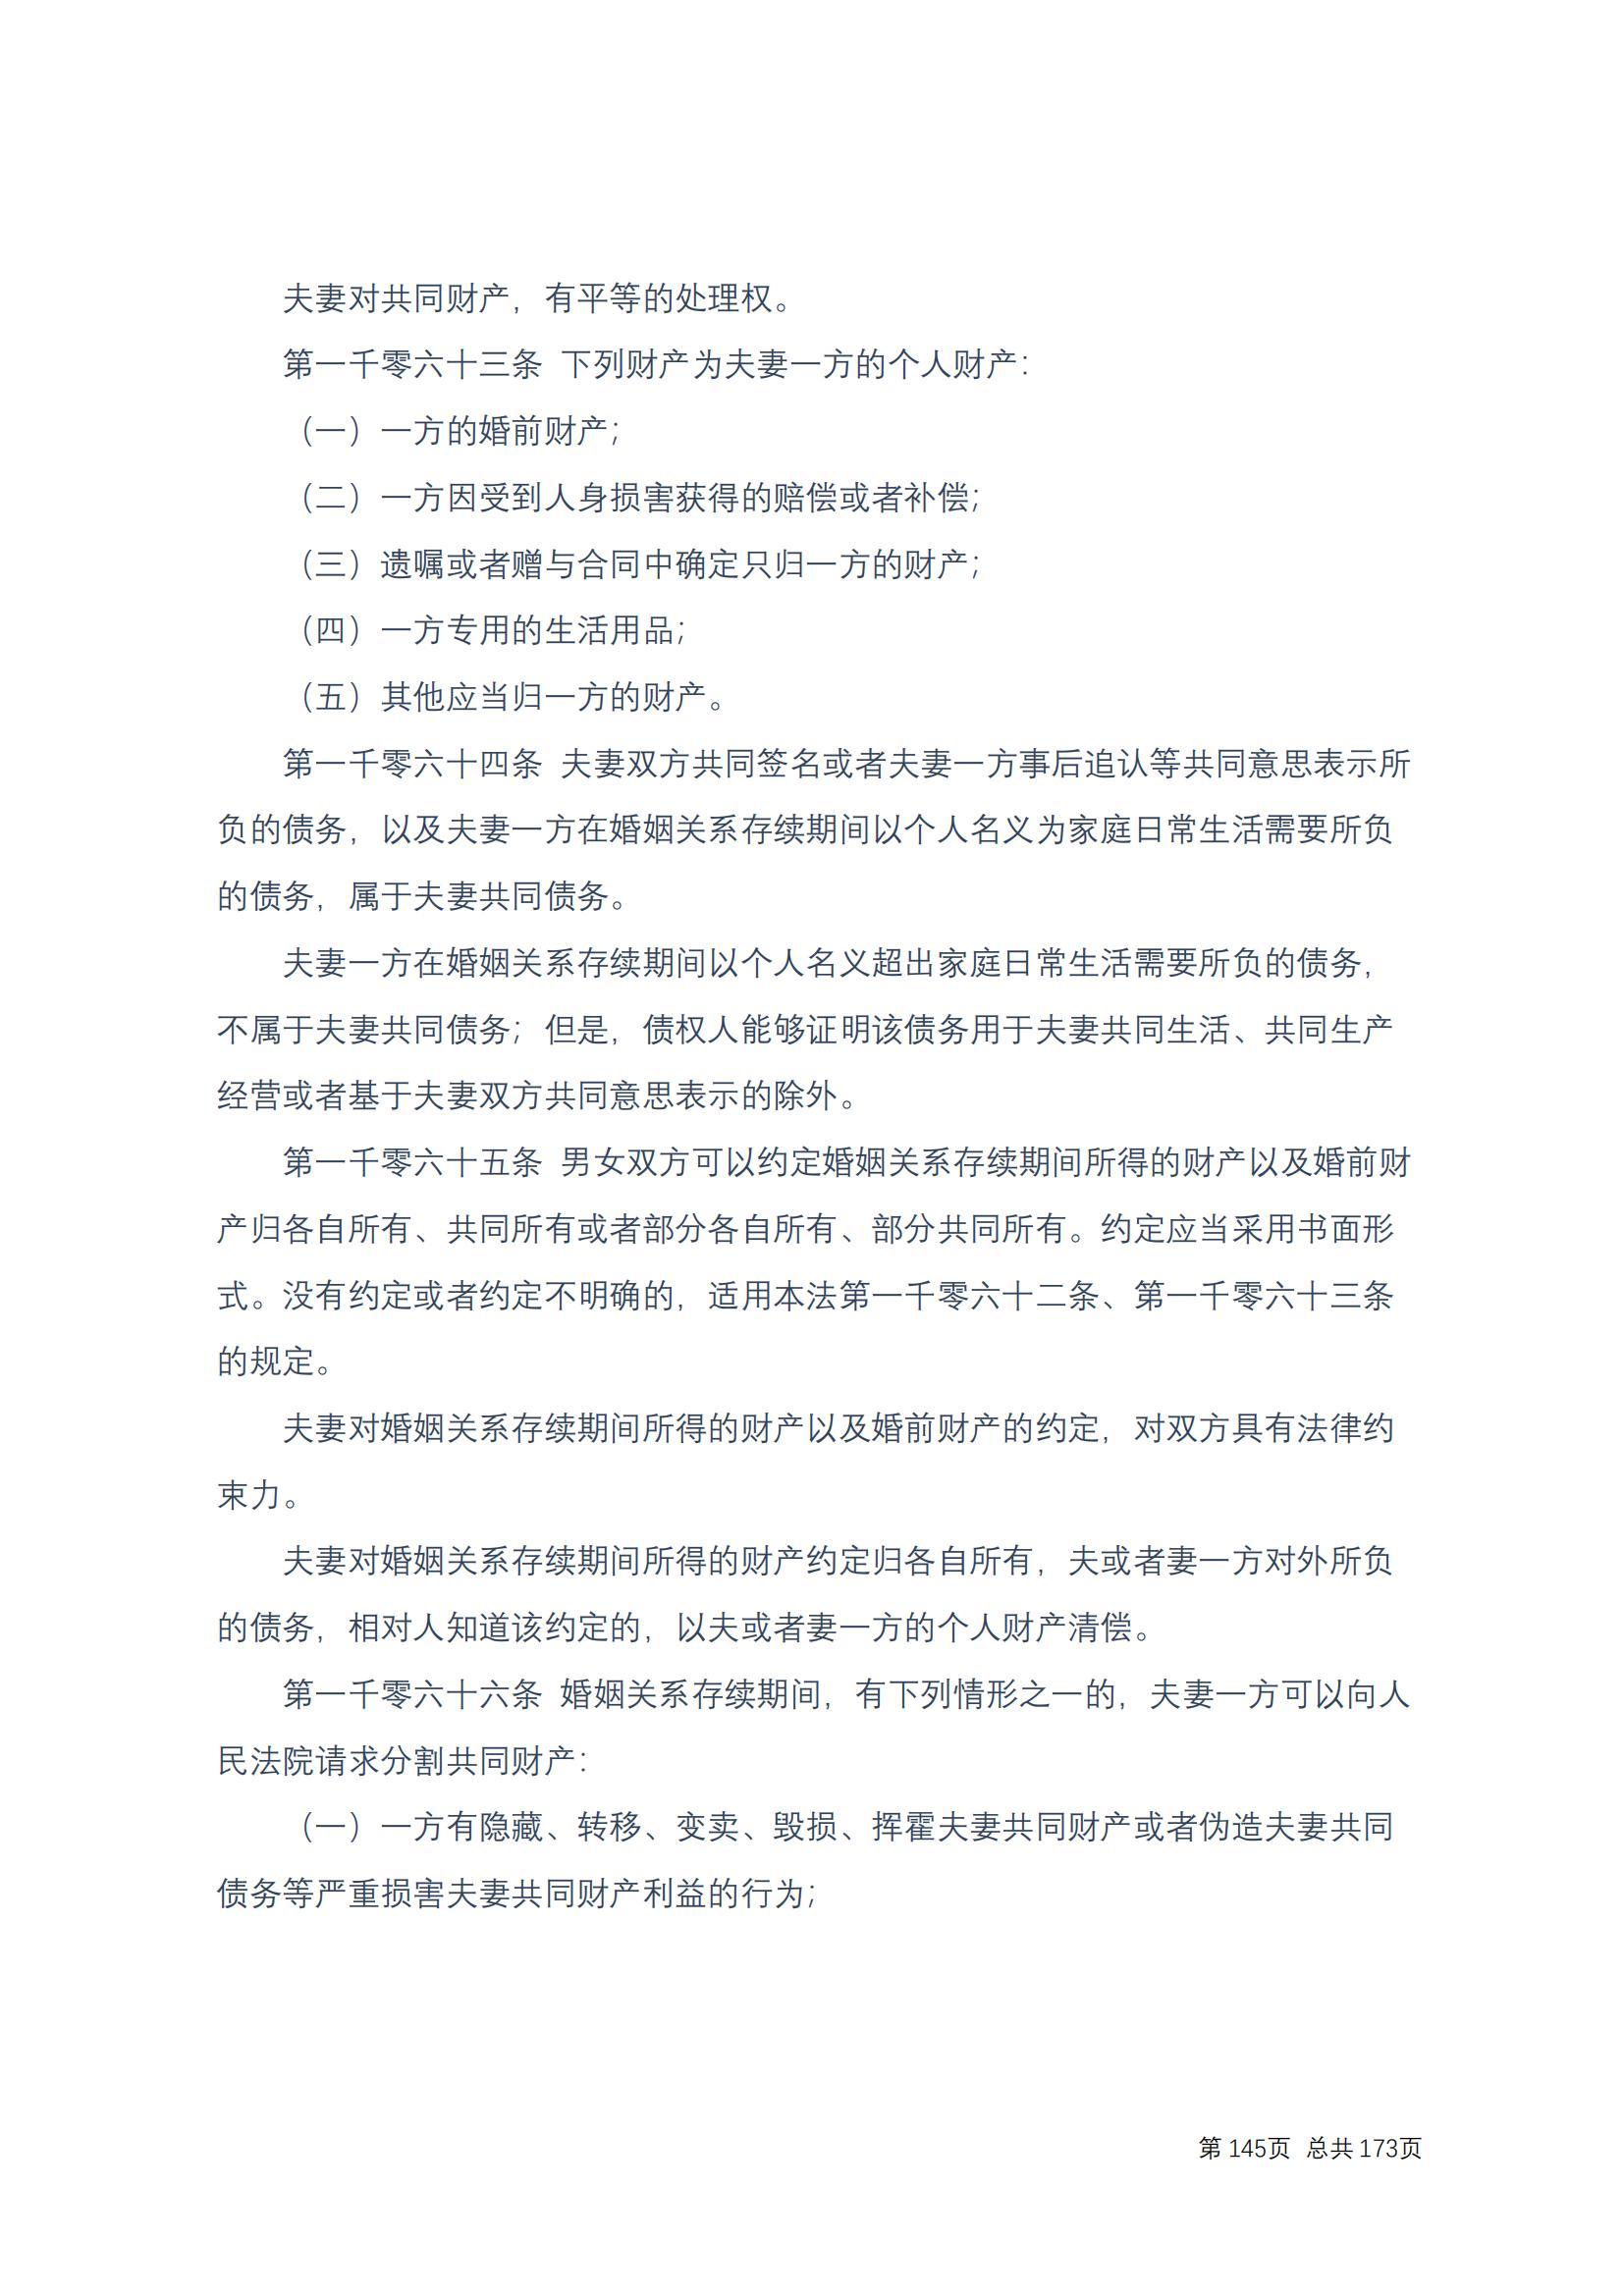 中华人民共和国民法典 修改过_144